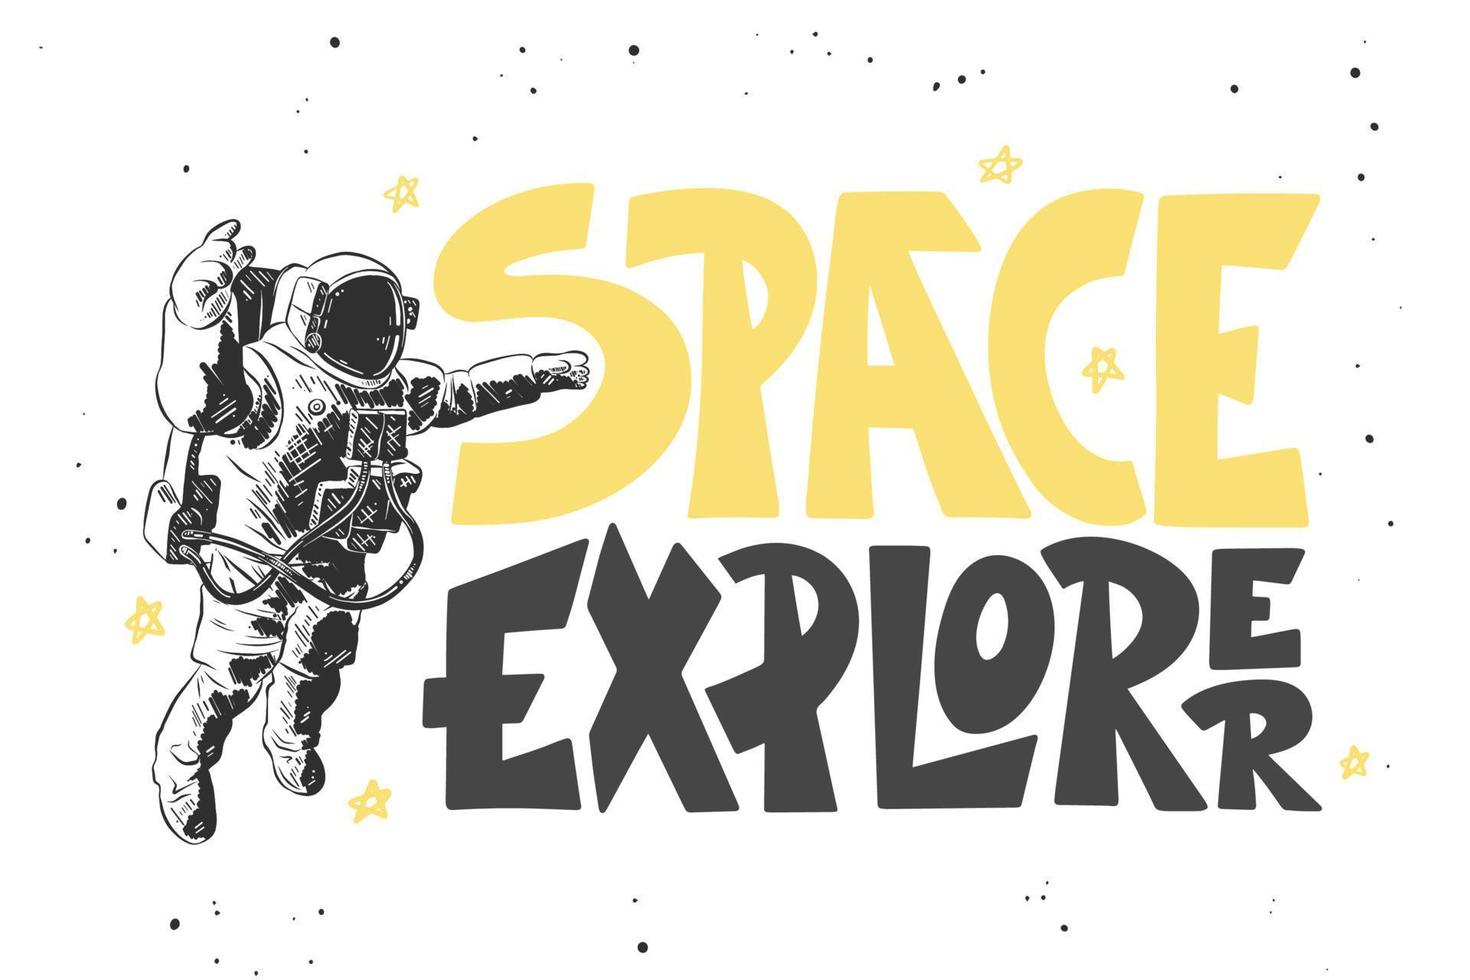 illustration vectorielle de style gravé avec typographie pour affiches, décoration et impression. croquis dessiné à la main d'un astronaute avec un lettrage moderne sur fond blanc. explorateur de l'espace. vecteur